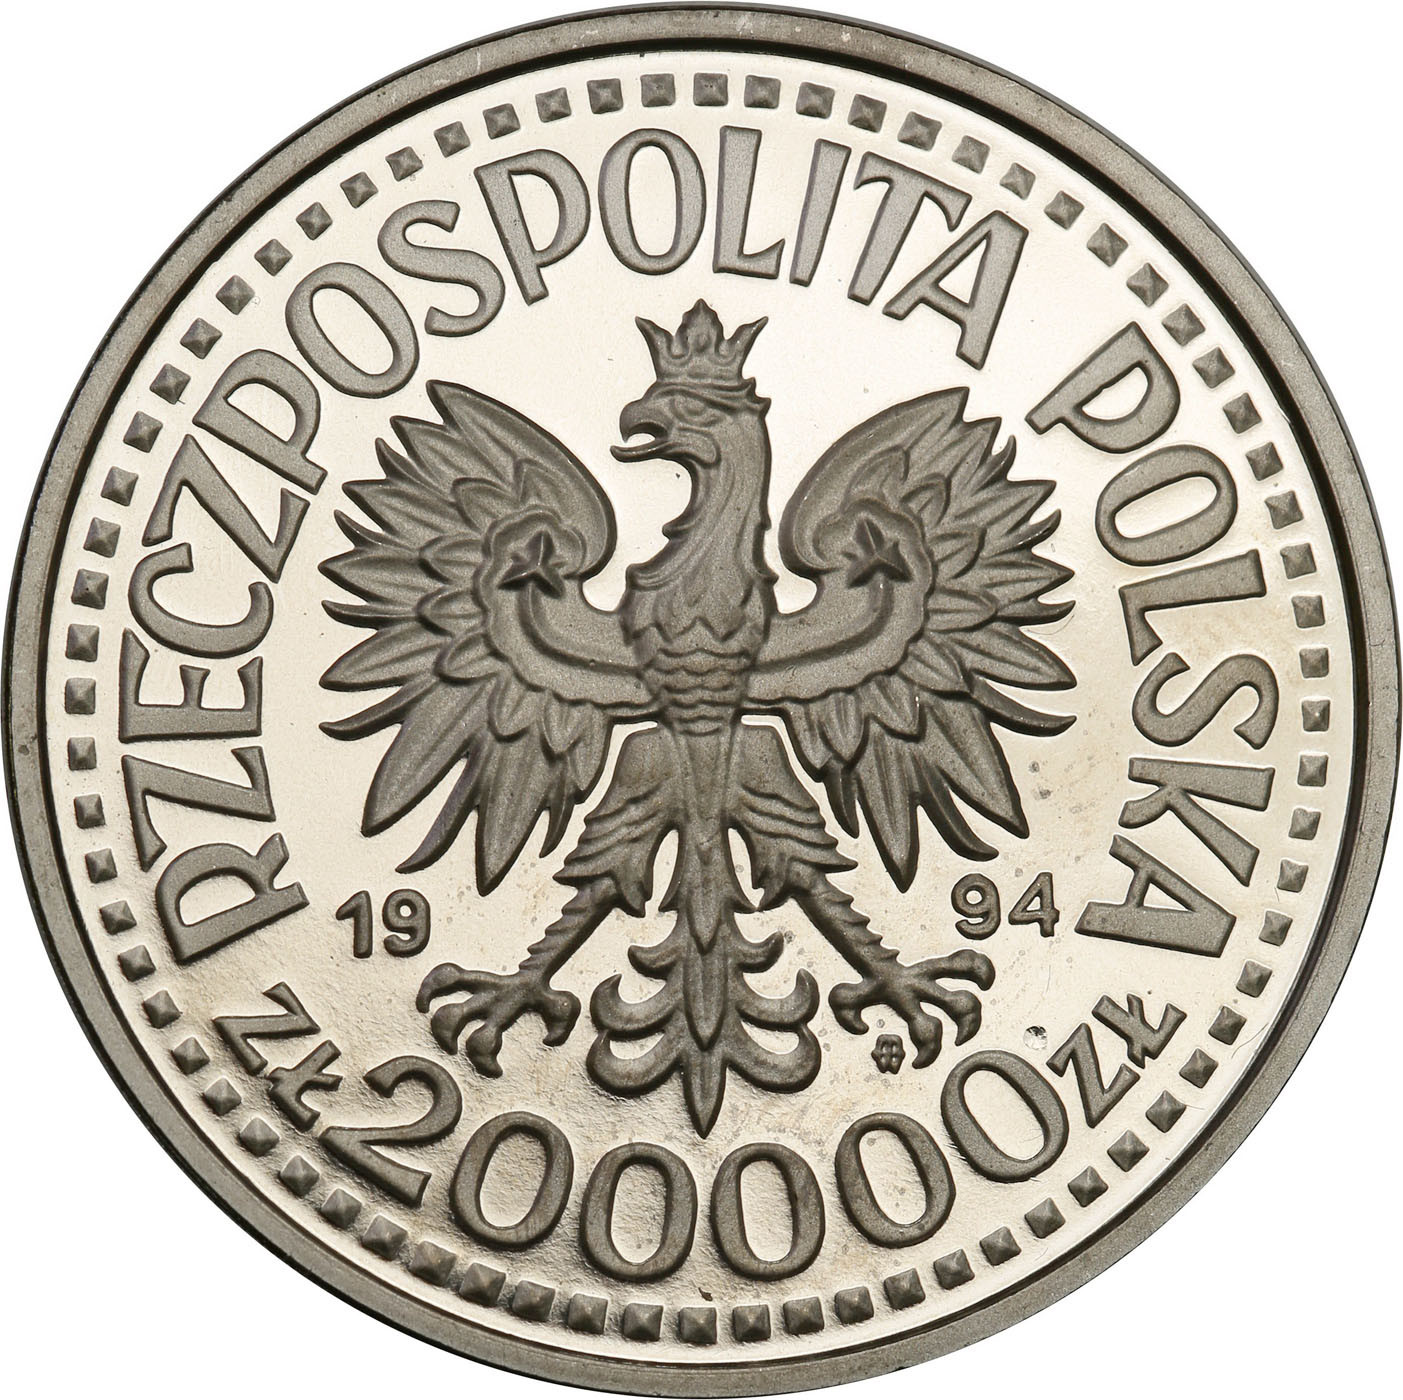 PRL. PRÓBA Nikiel 200 000 złotych 1994 – Zygmunt I Stary - półpostać